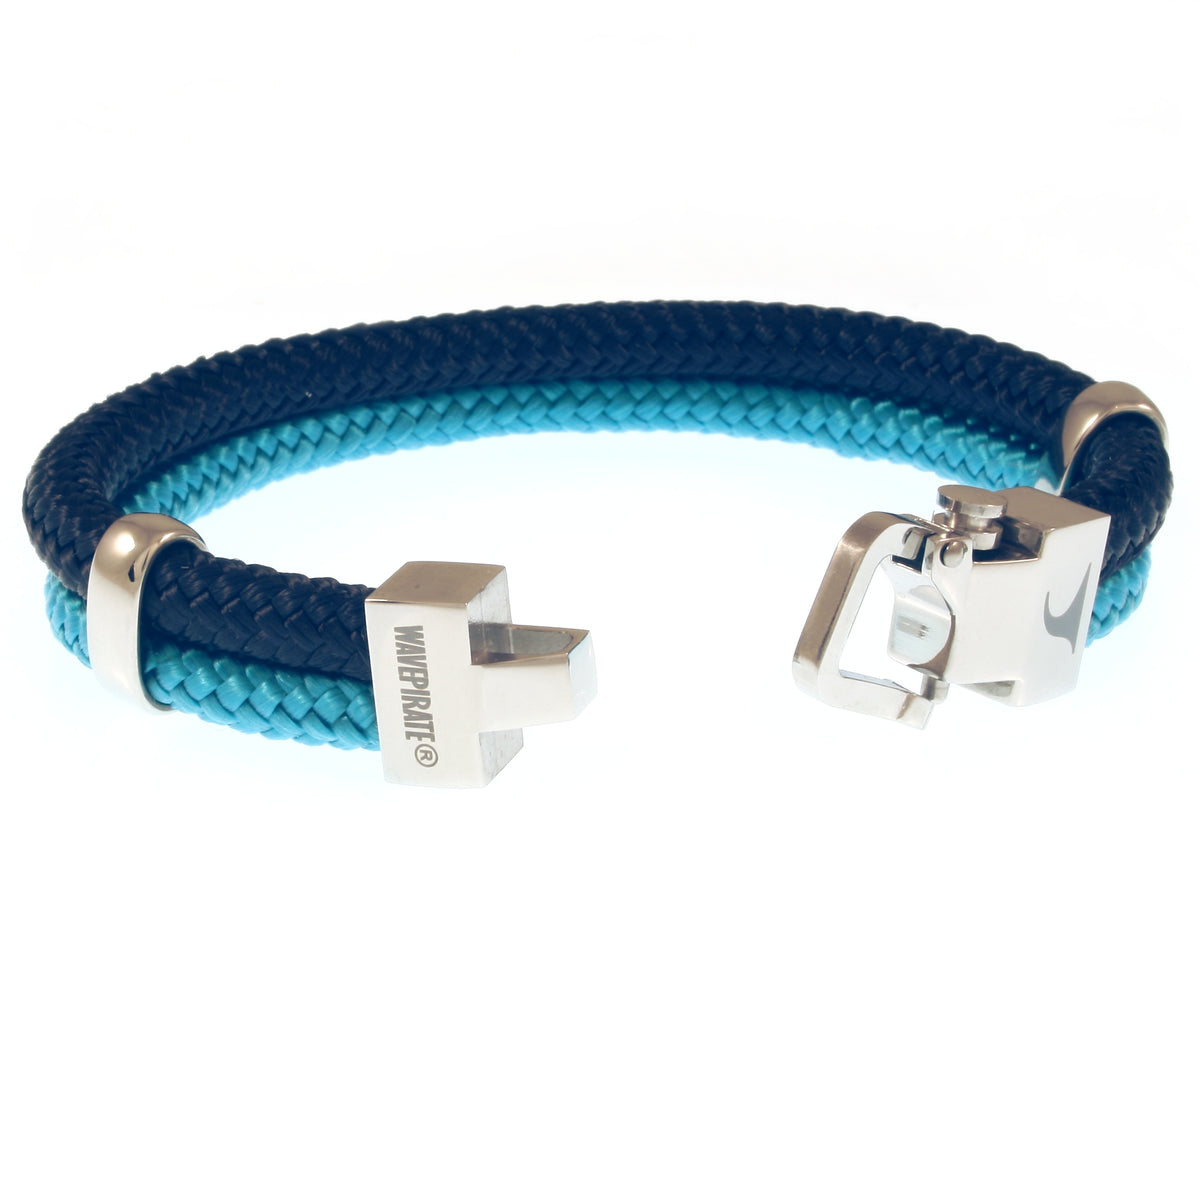 Herren-Segeltau-Armband-Turn-nachtblau-blau-geflochten-Edelstahlverschluss-offen-wavepirate-shop-st